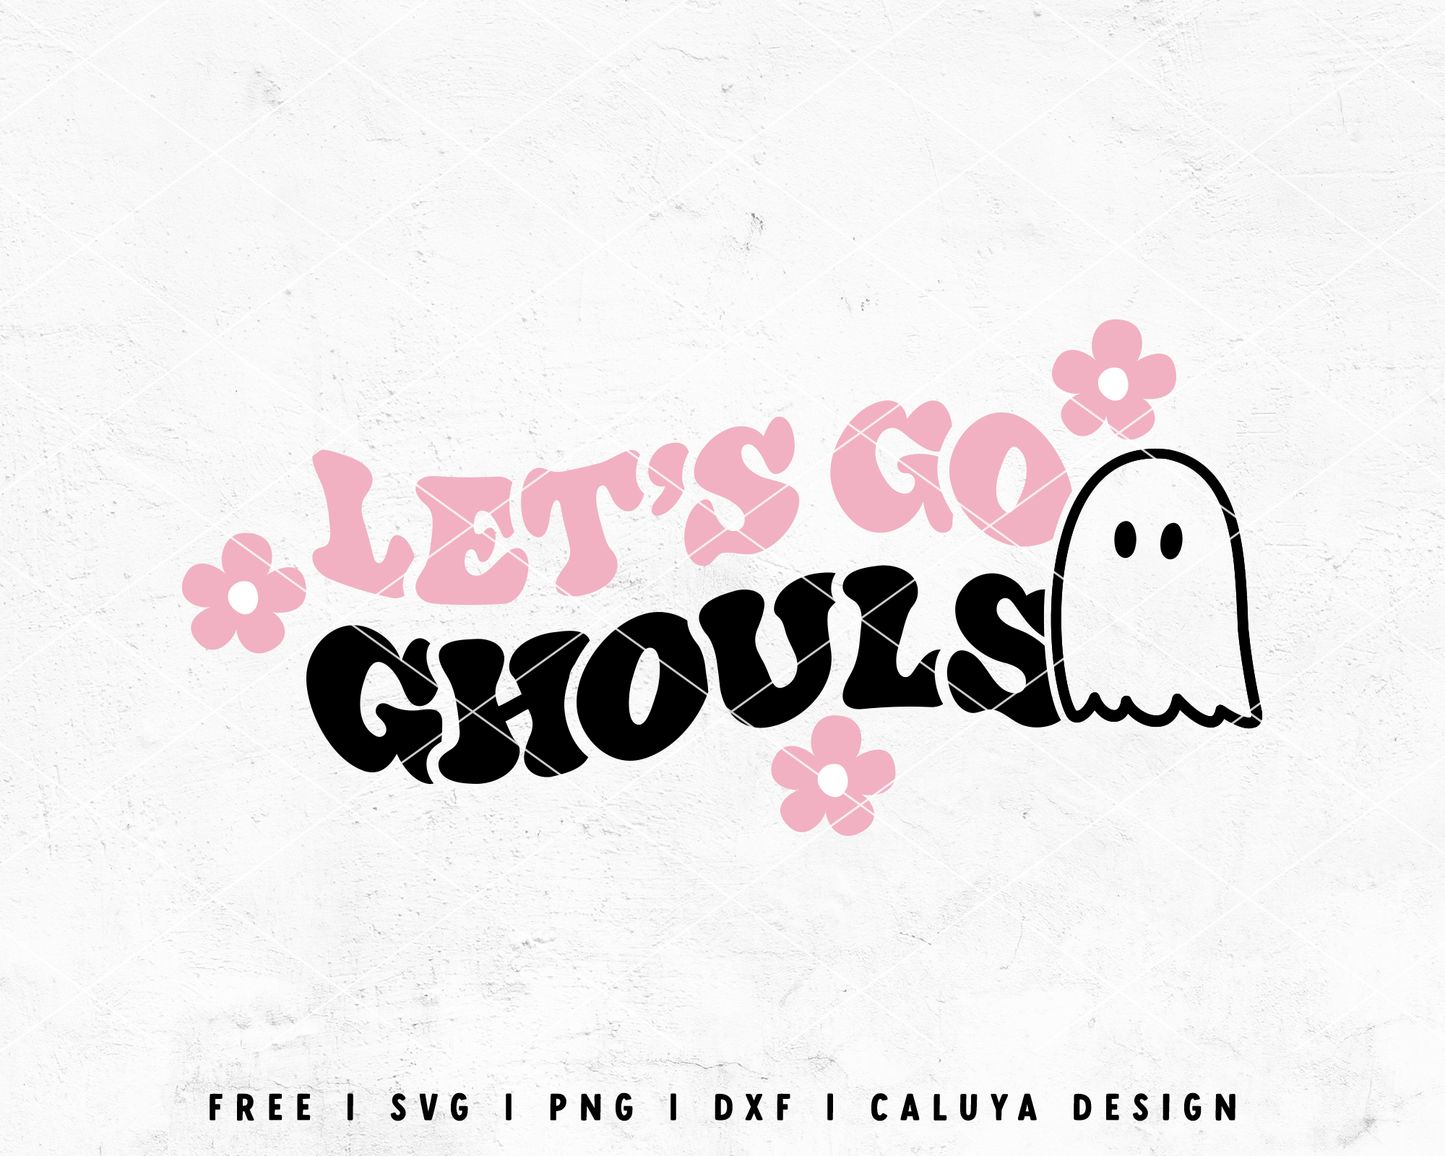 FREE Let's Go Ghouls SVG | Halloween SVG